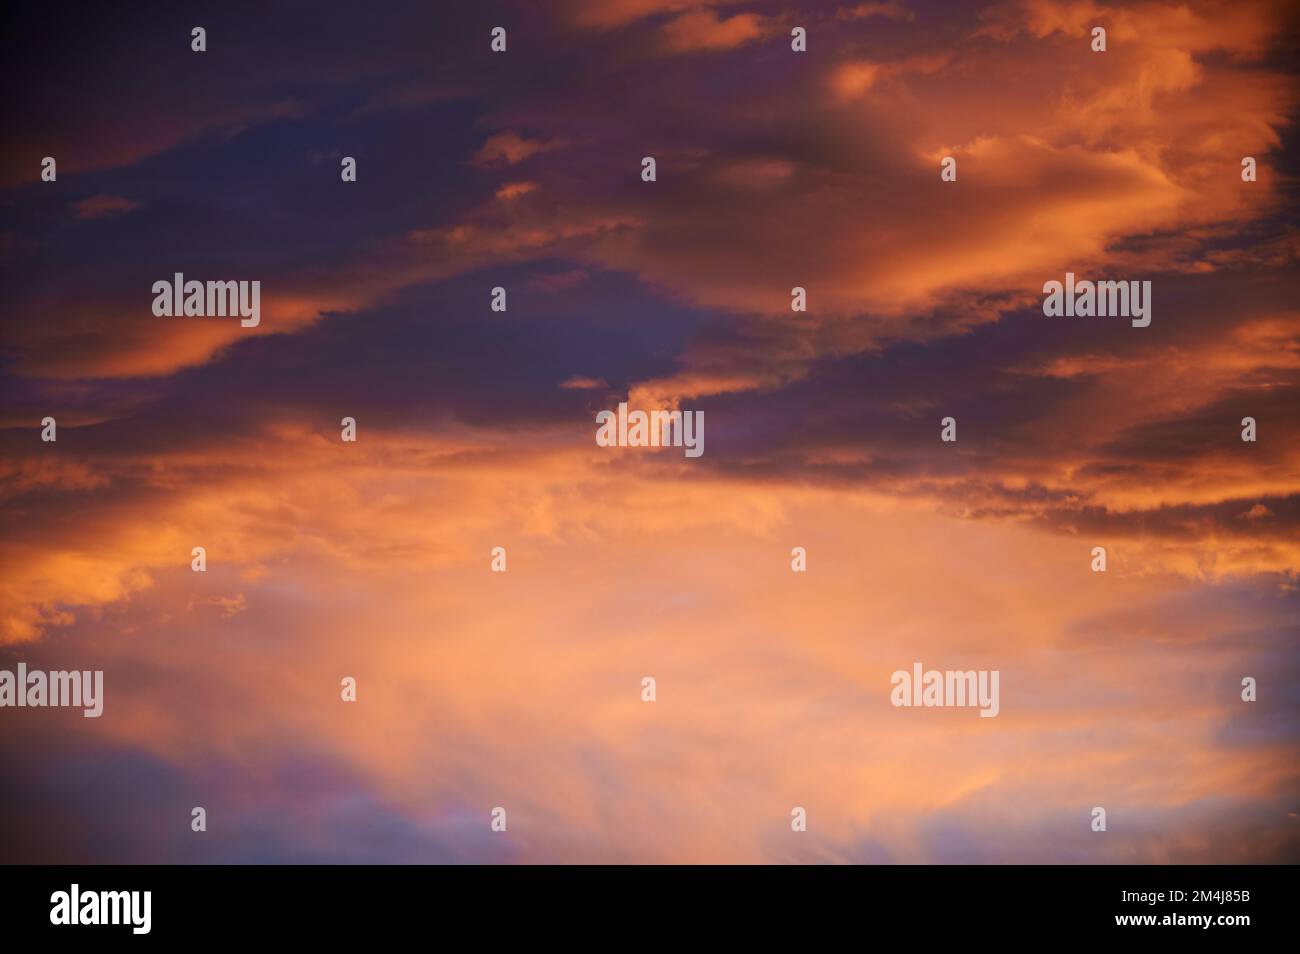 Sonnenaufgang mit einem Himmel voller wunderschöner Wolken mit Blau- und Orangenfarben, die einen Wirbel bilden Stockfoto